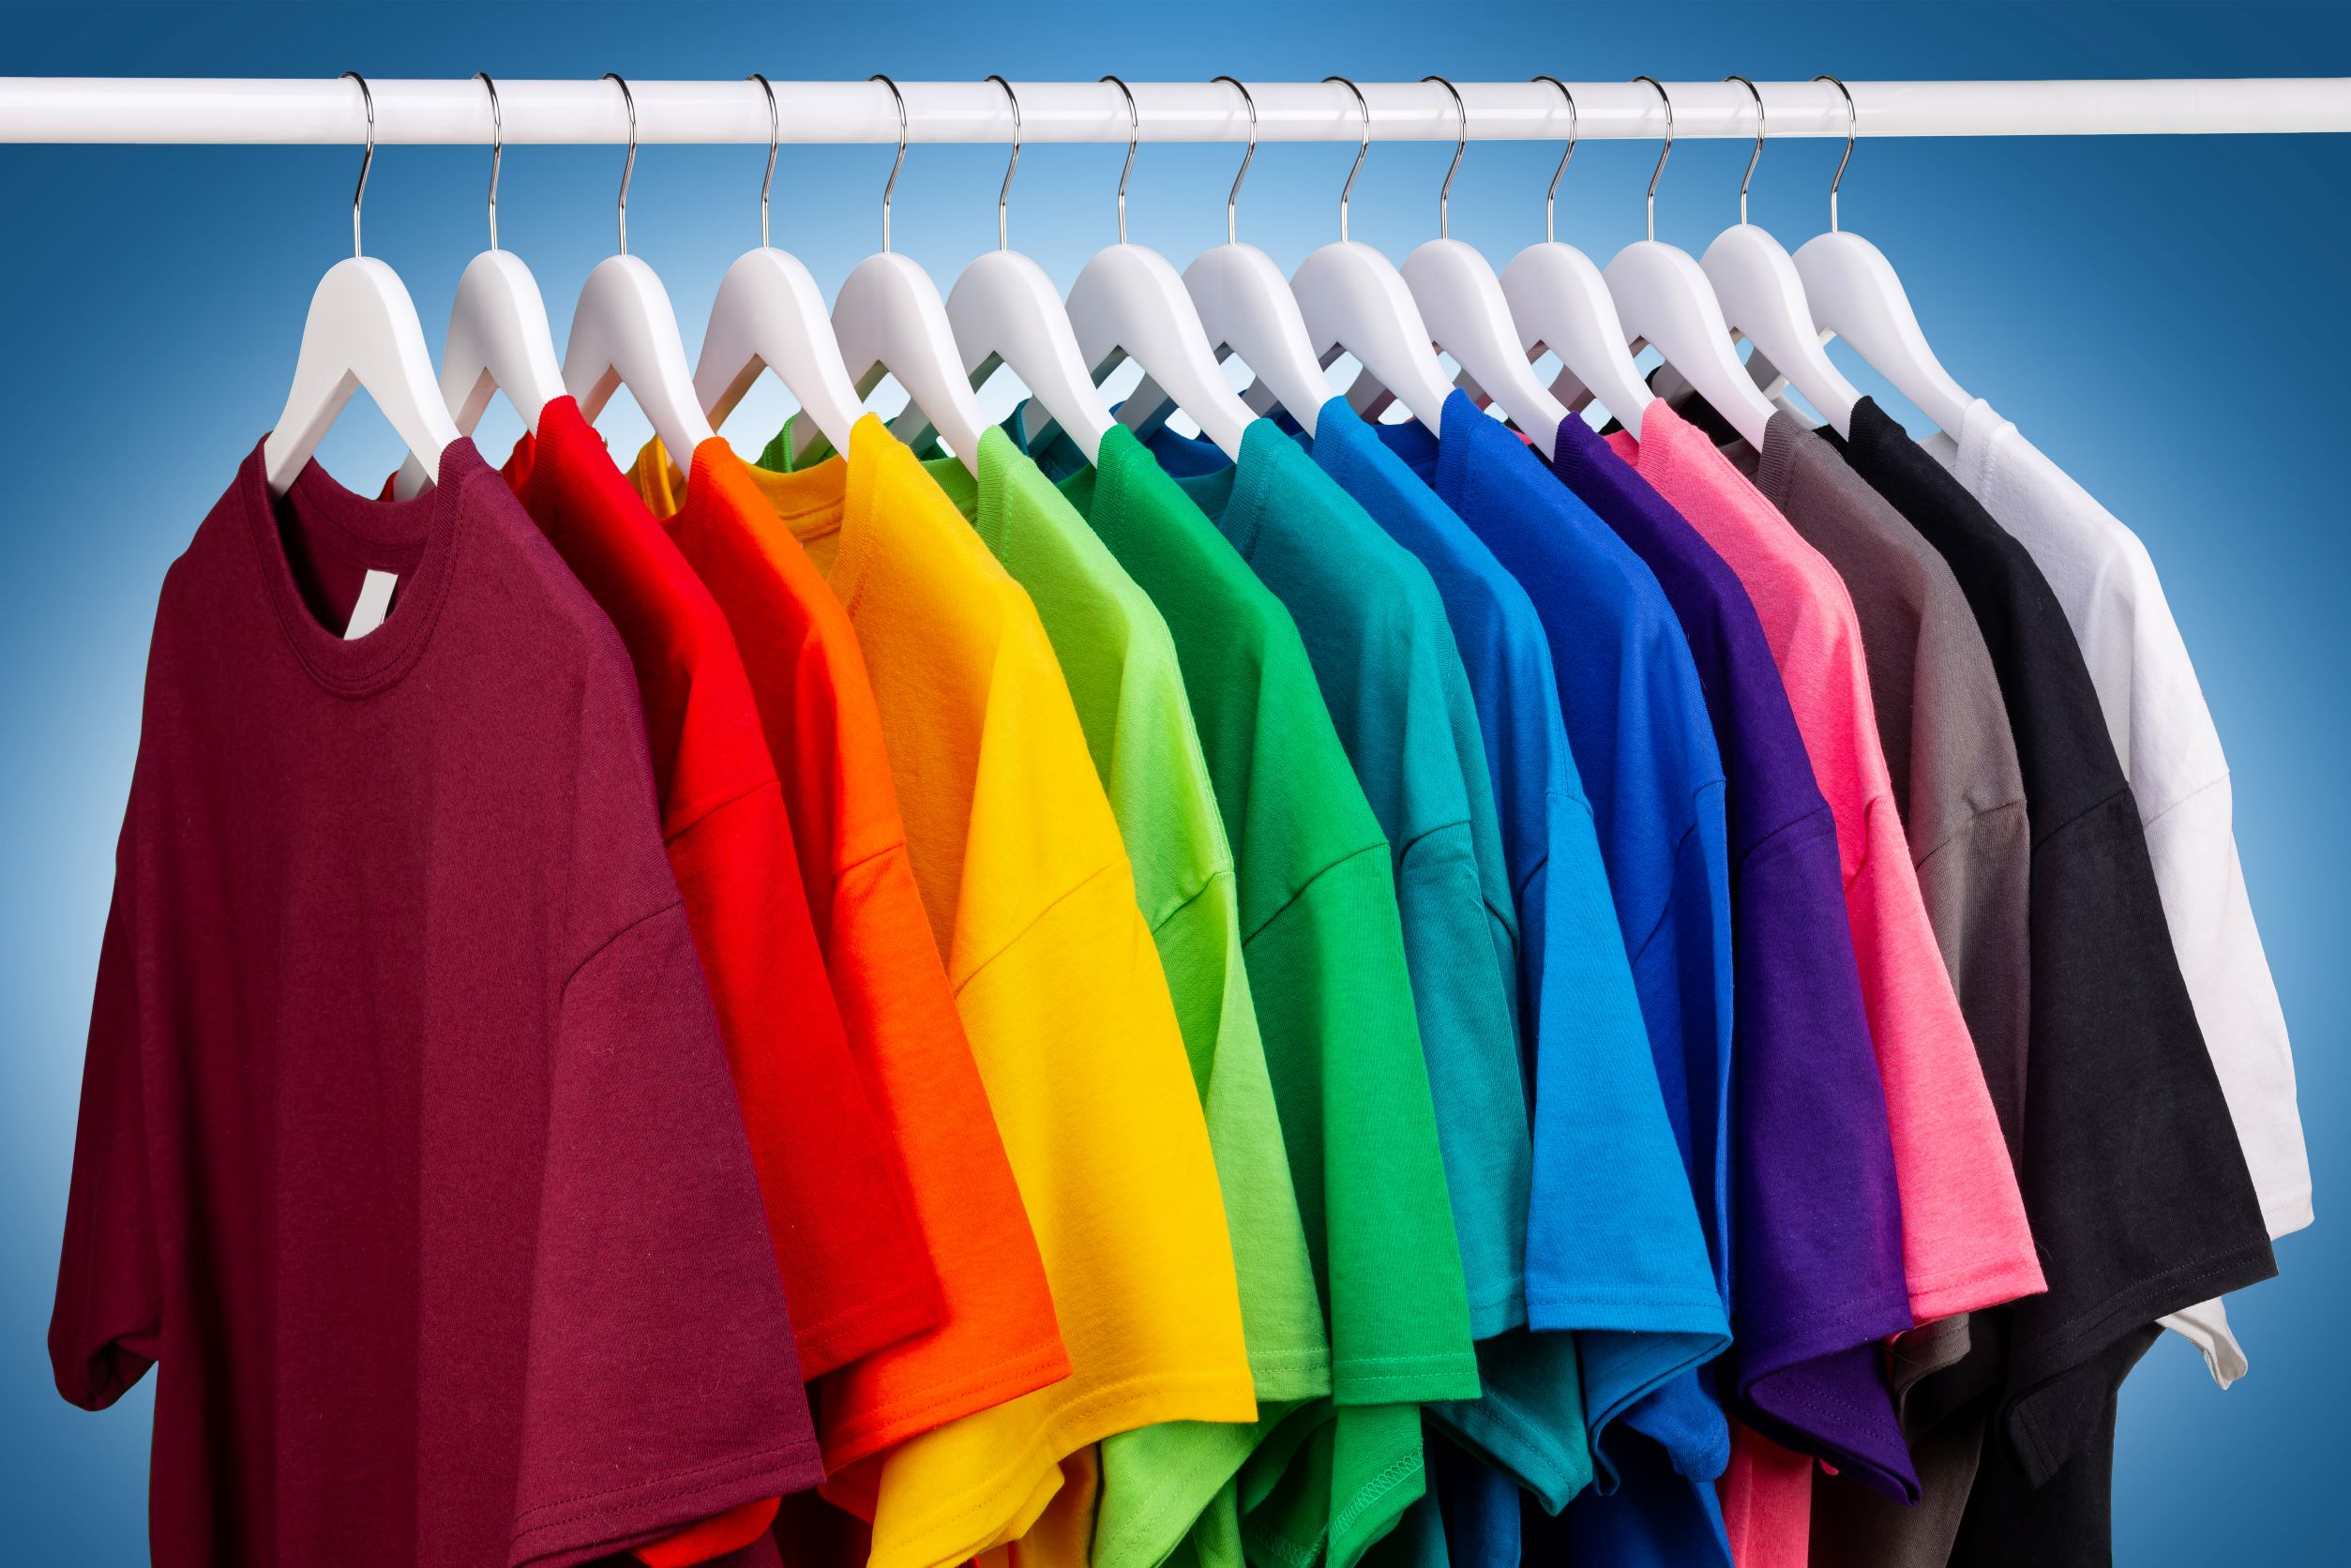 สีมงคลของ HR : เลือกสีเสื้อ ใช้สีห้องอย่างไรให้ถูกใจคนทำงาน สายมูต้องอ่าน !